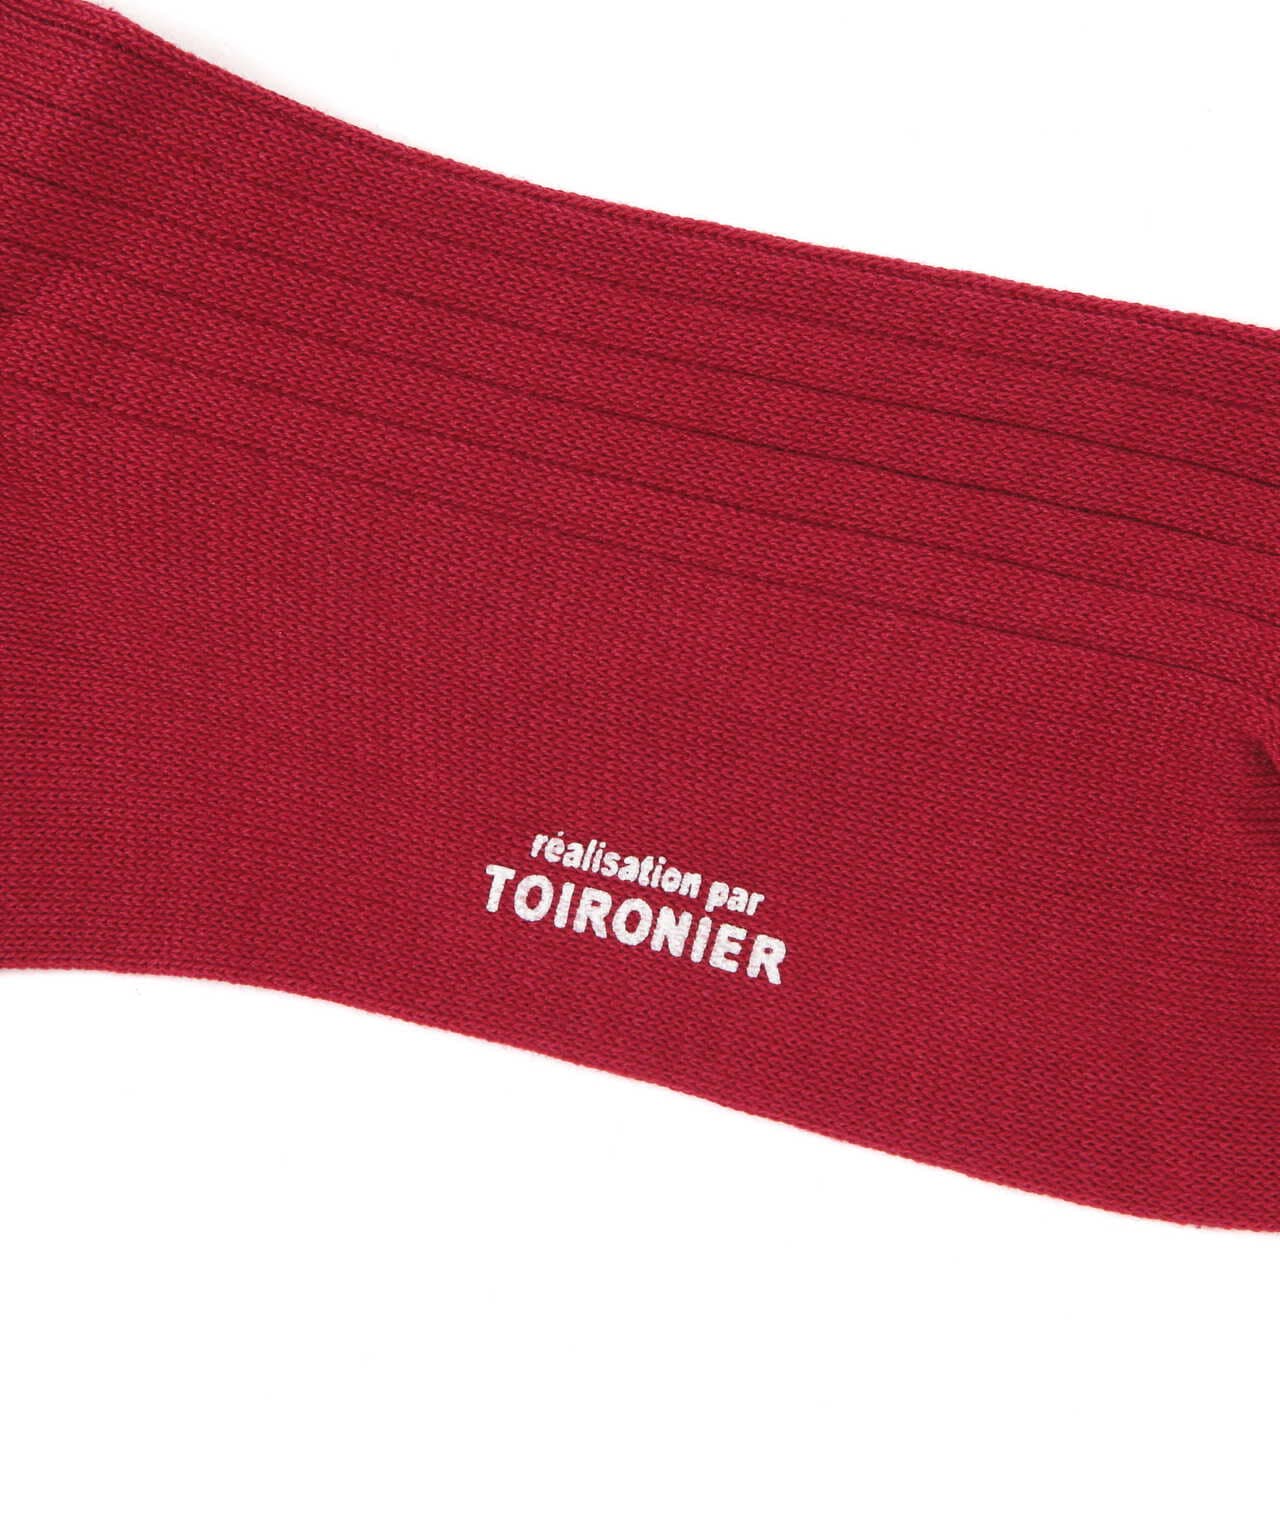 Toironier/トワロニエ/The Socks